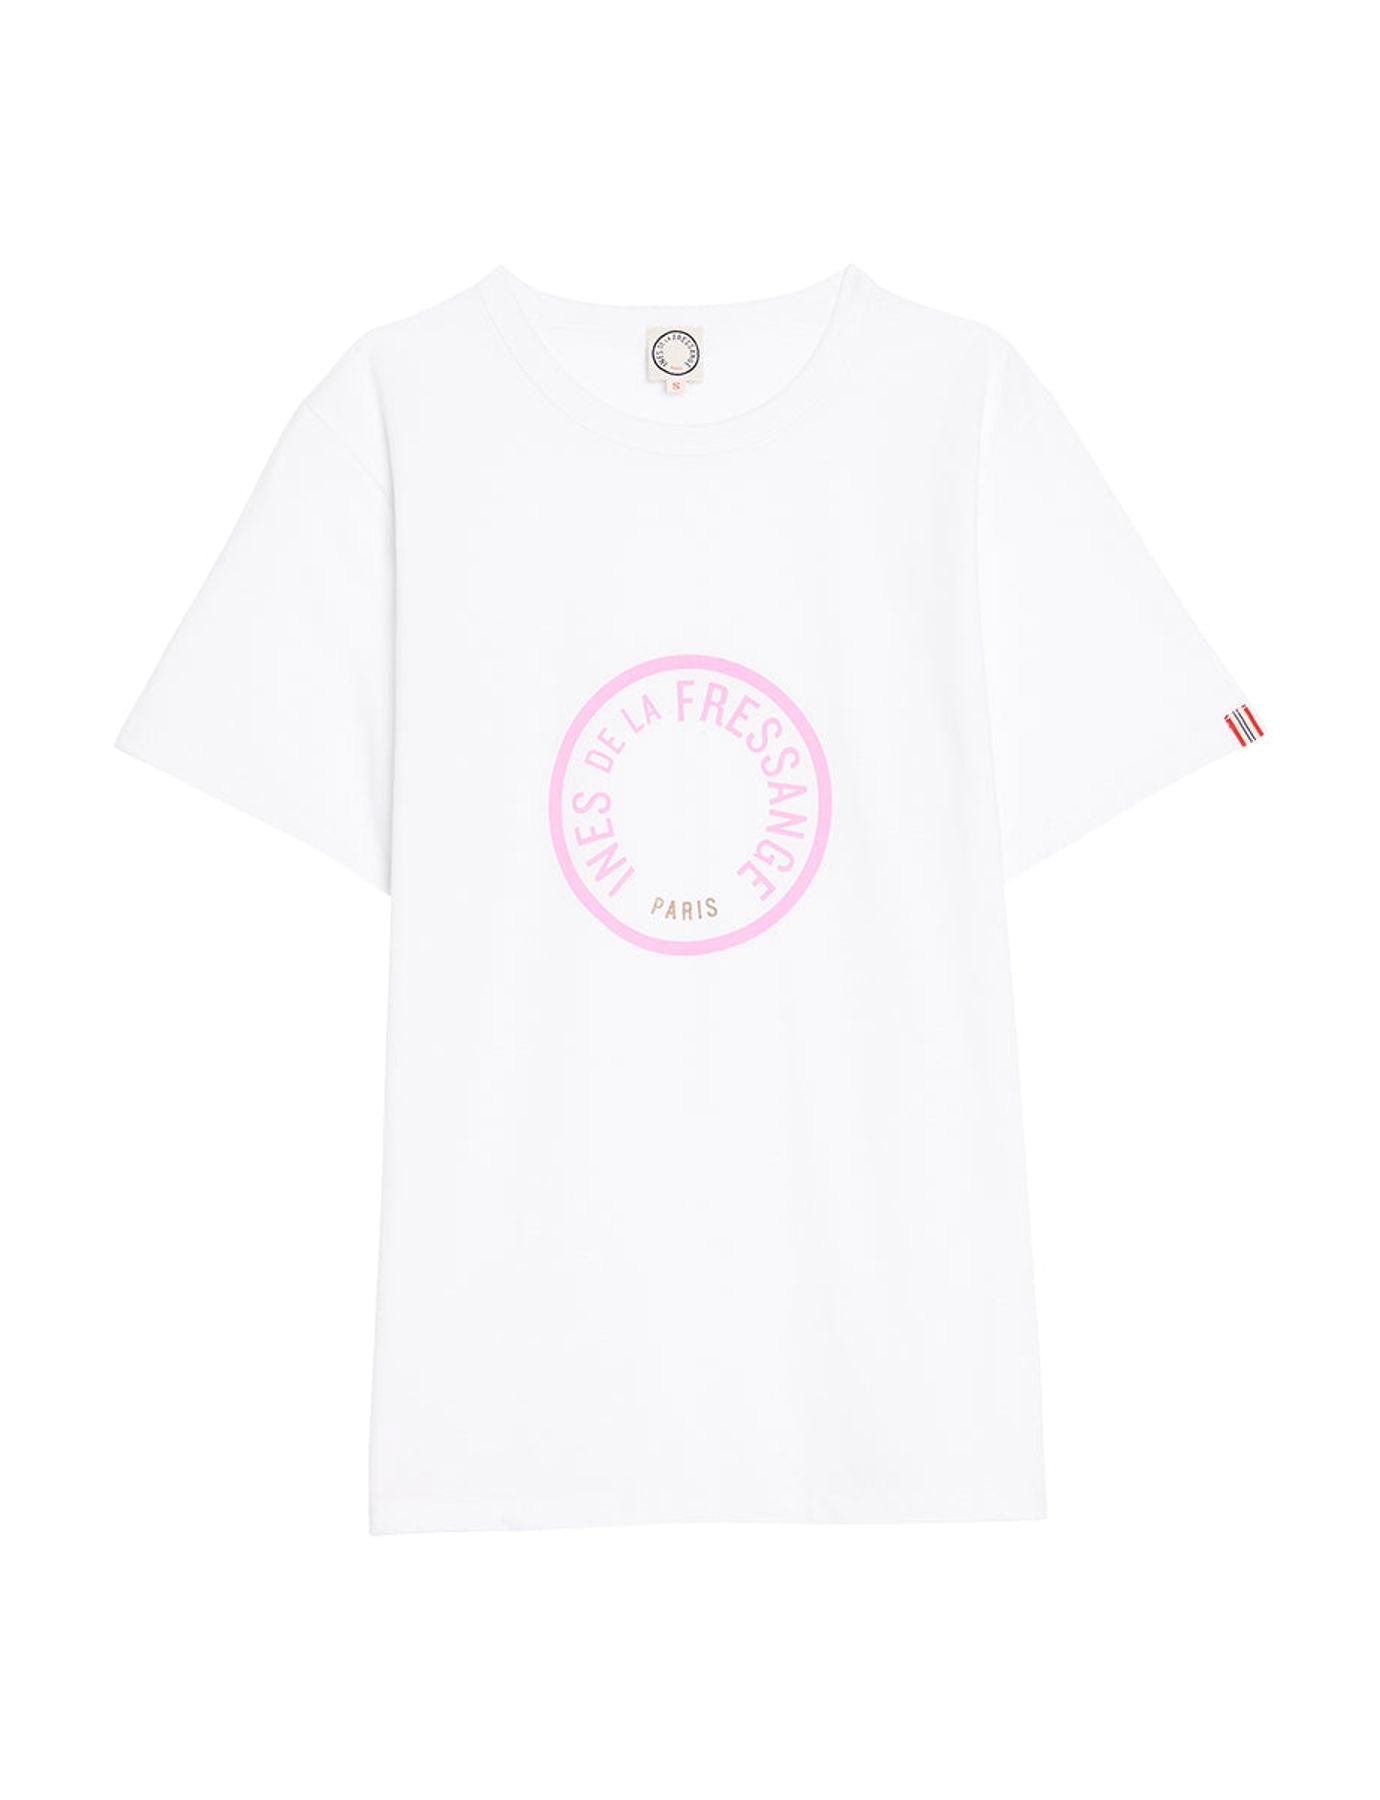 t-shirt-oscar-white-logo-rose